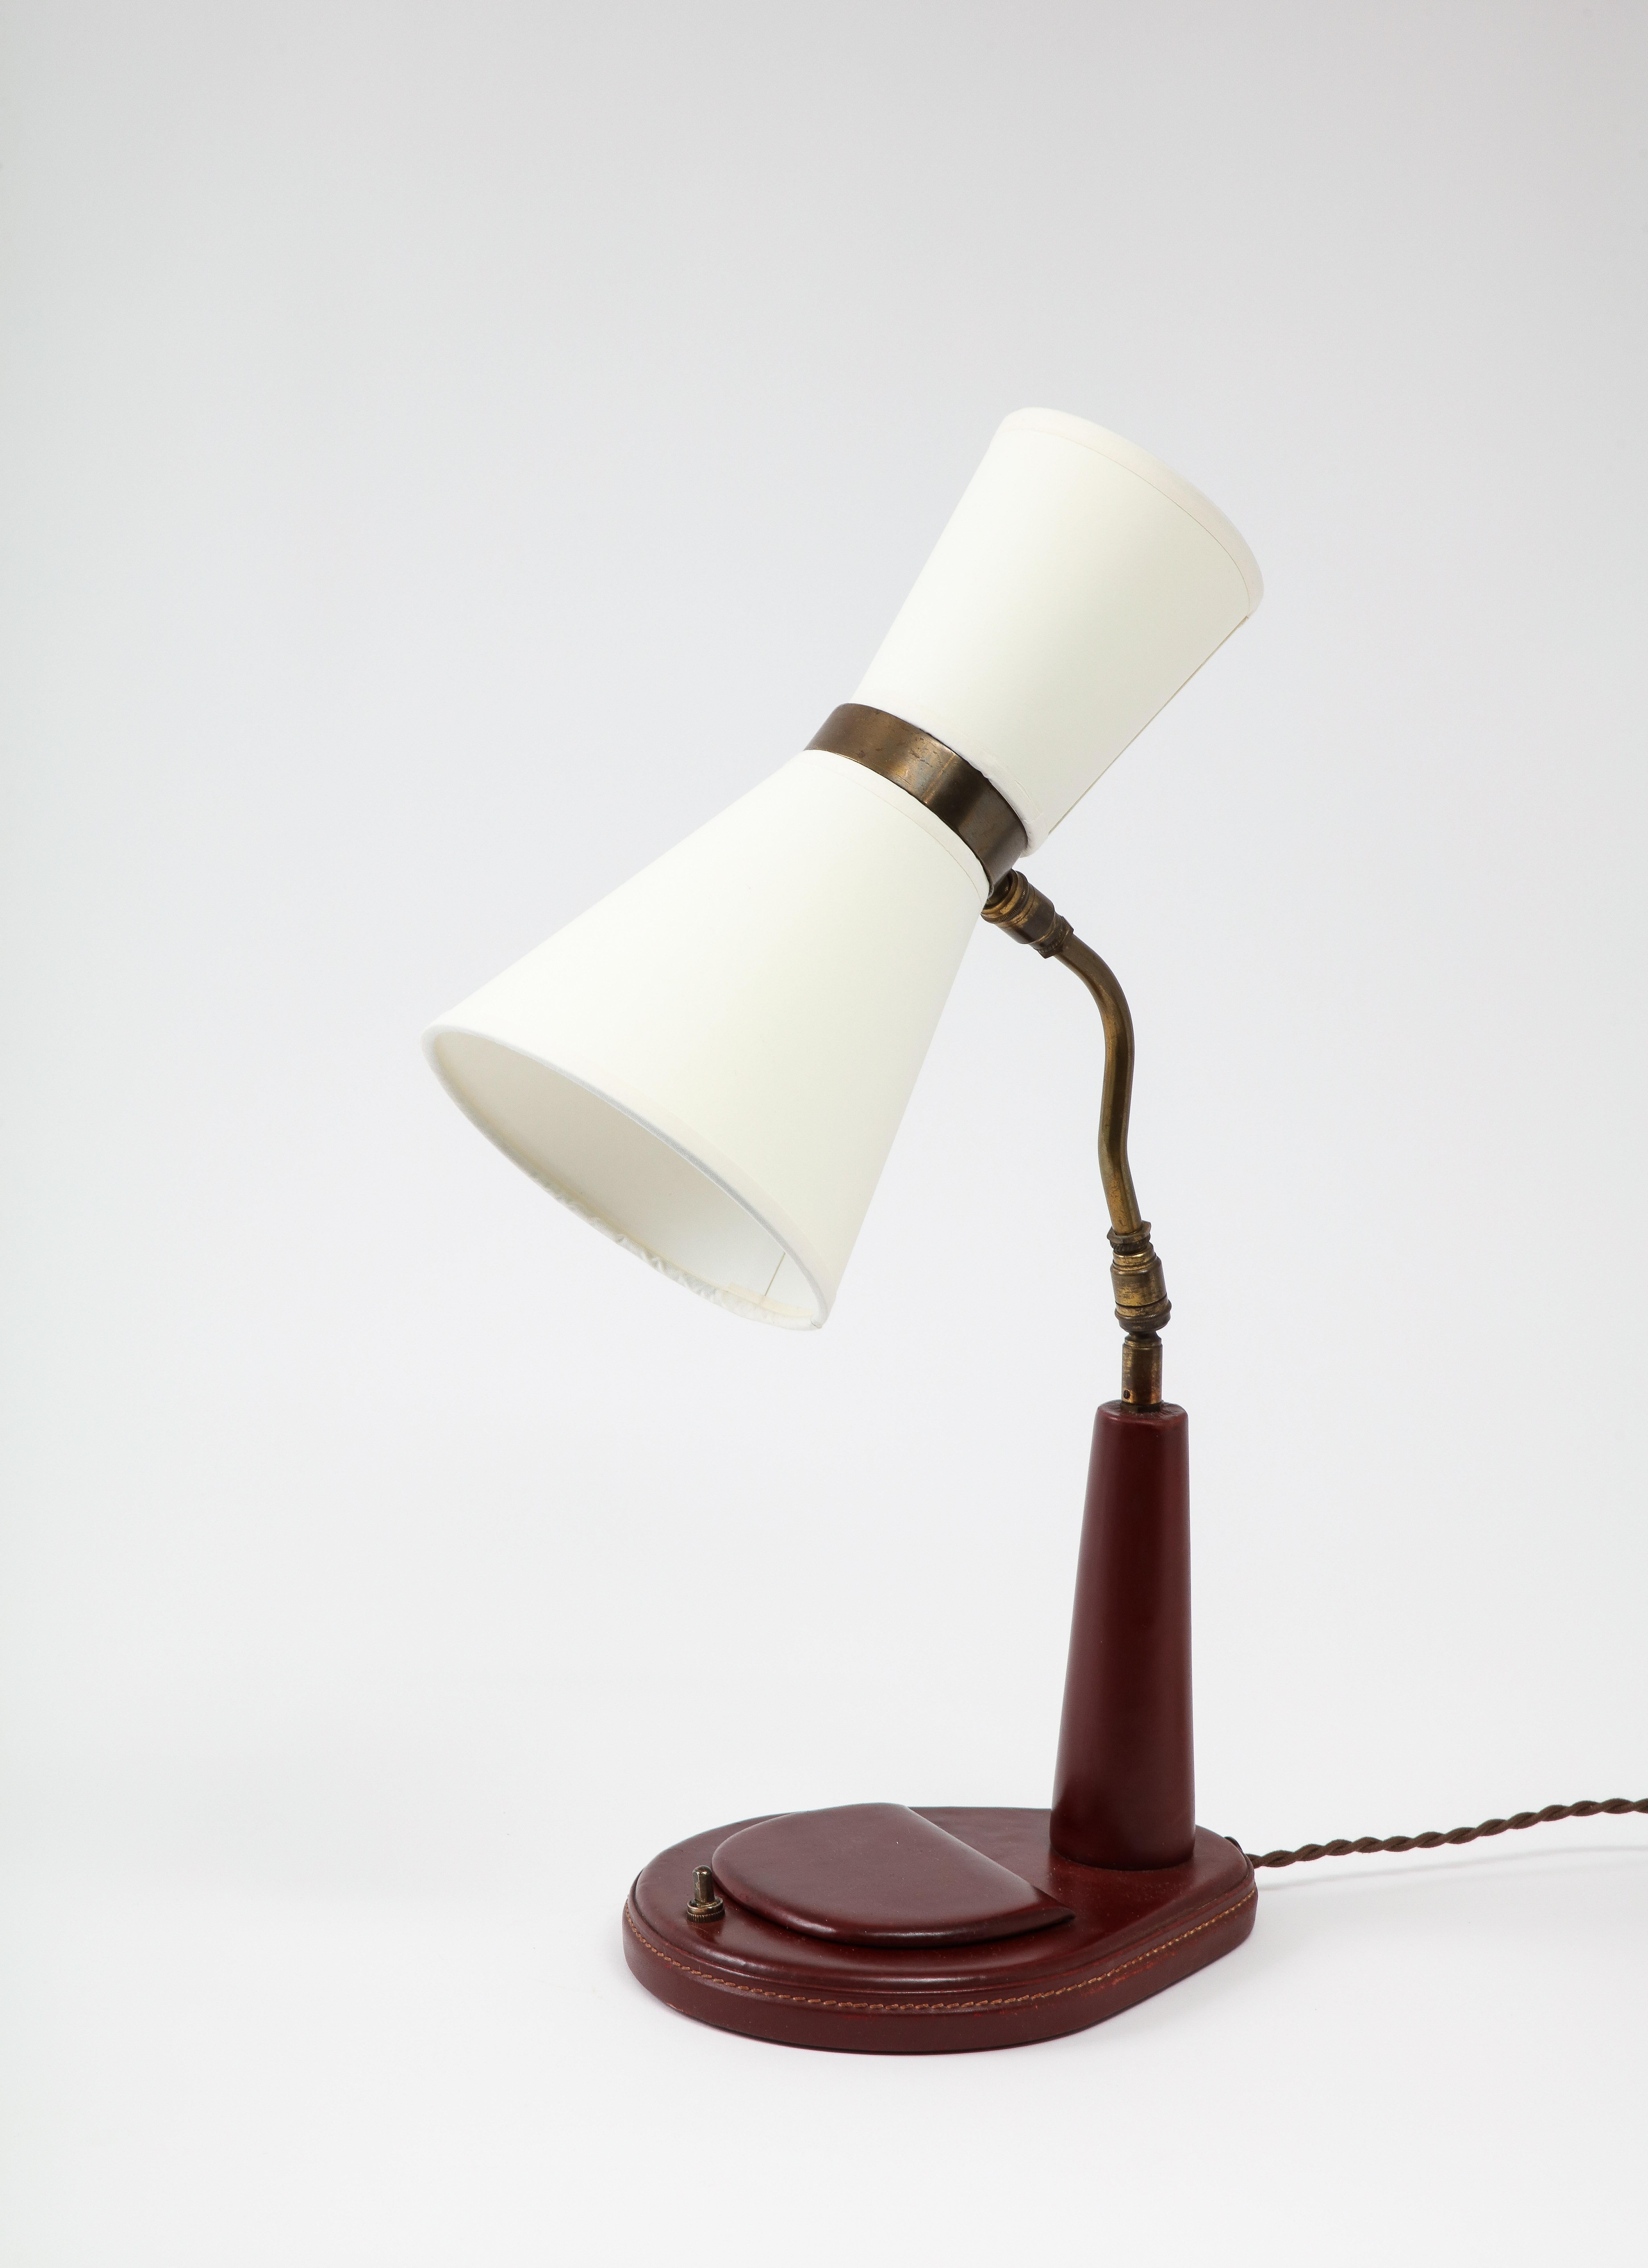 Élégante lampe de bureau Eleg en cuir bordeaux ; elle possède un petit compartiment à couvercle dans la base. La lampe est recâblée avec un cordon de soie et une prise de style d'époque et est livrée avec des abat-jours personnalisés. Douilles